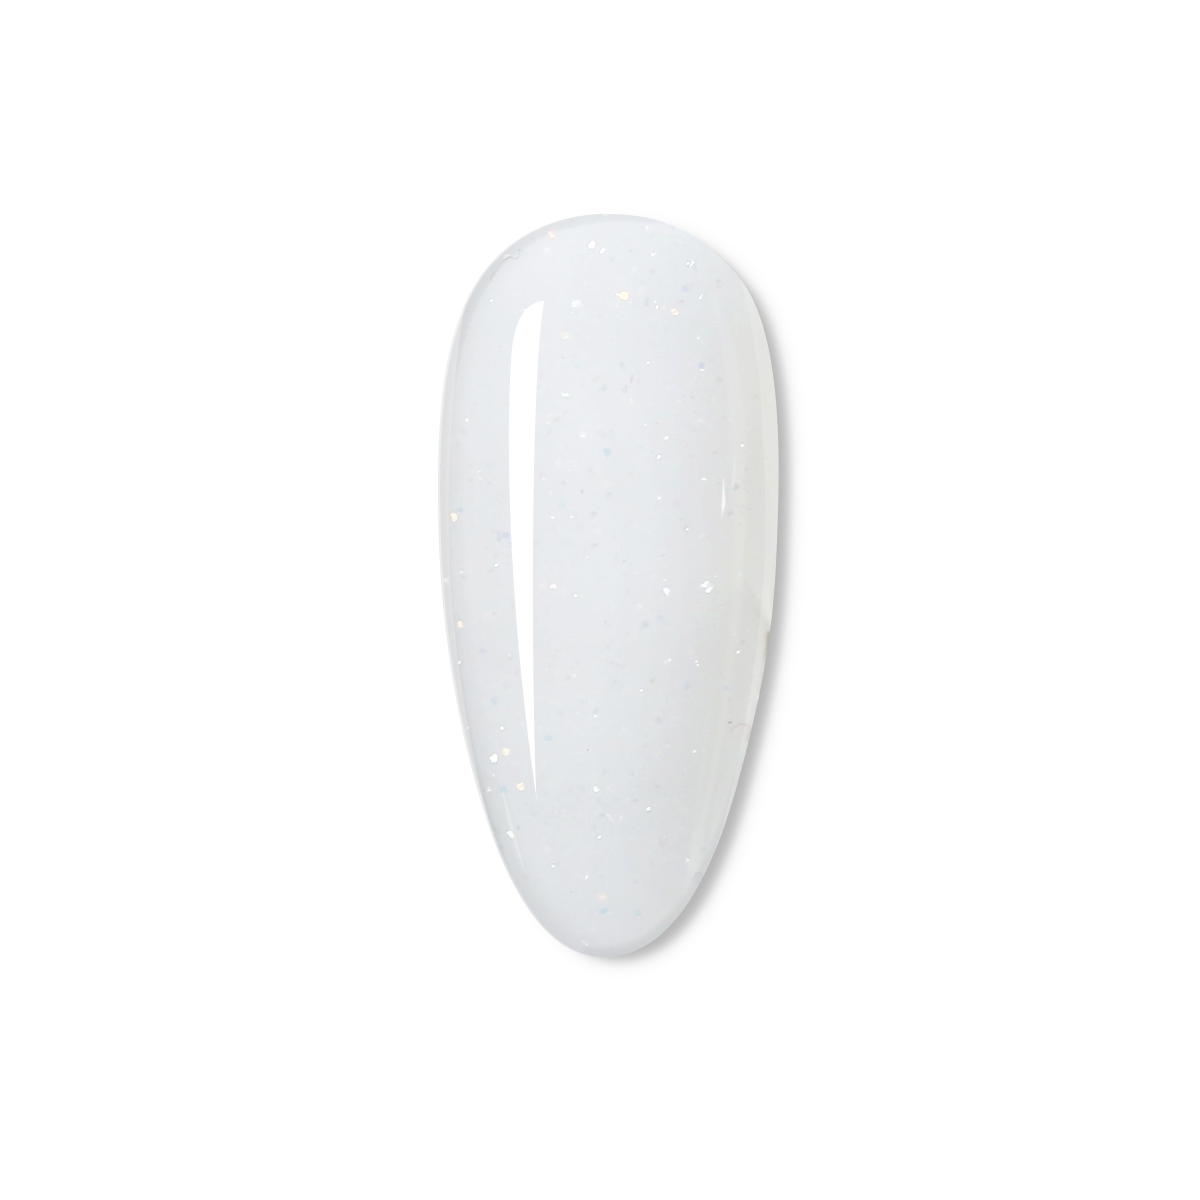 Shimmer White Poly Gel 60g